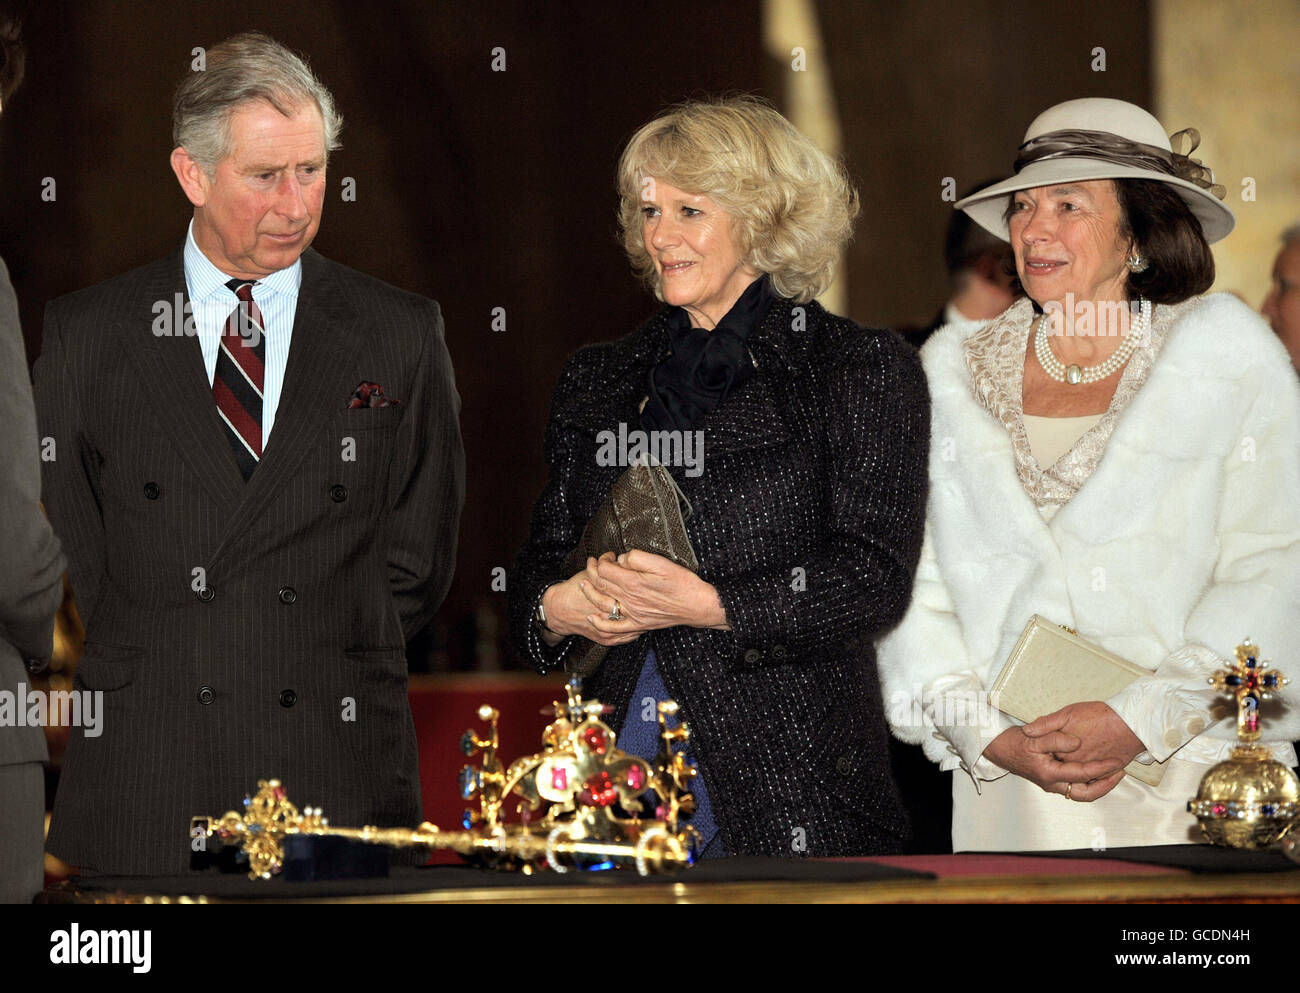 Le prince de Galles et la duchesse de Cornouailles étudient les joyaux de la couronne de la République tchèque avec Mme Livia Klaus, épouse du président Klaus, en visite au château de Prague, après leur arrivée dans la capitale tchèque au départ de Budapest en Hongrie. Banque D'Images